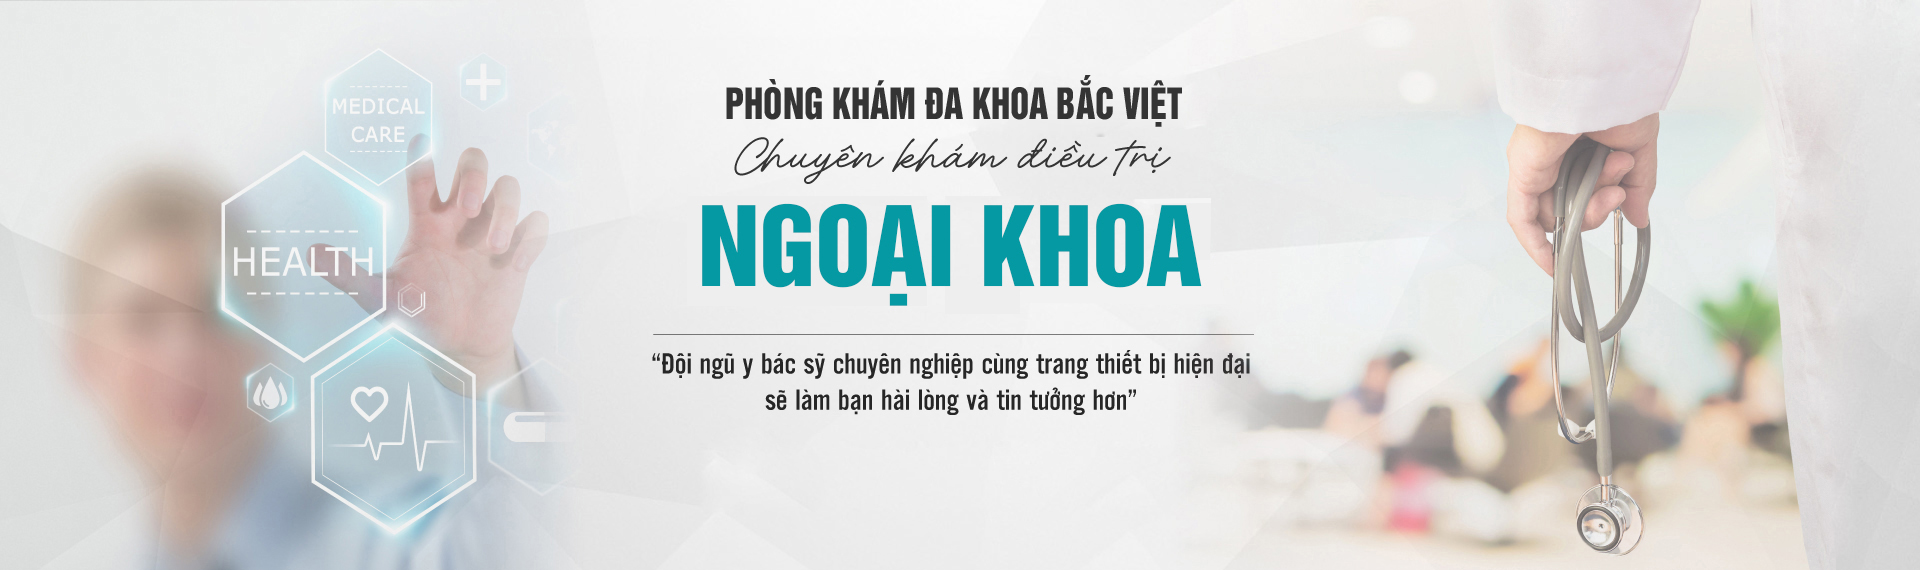 chat-luong-phong-kham-thien-hoa-co-tot-khong1